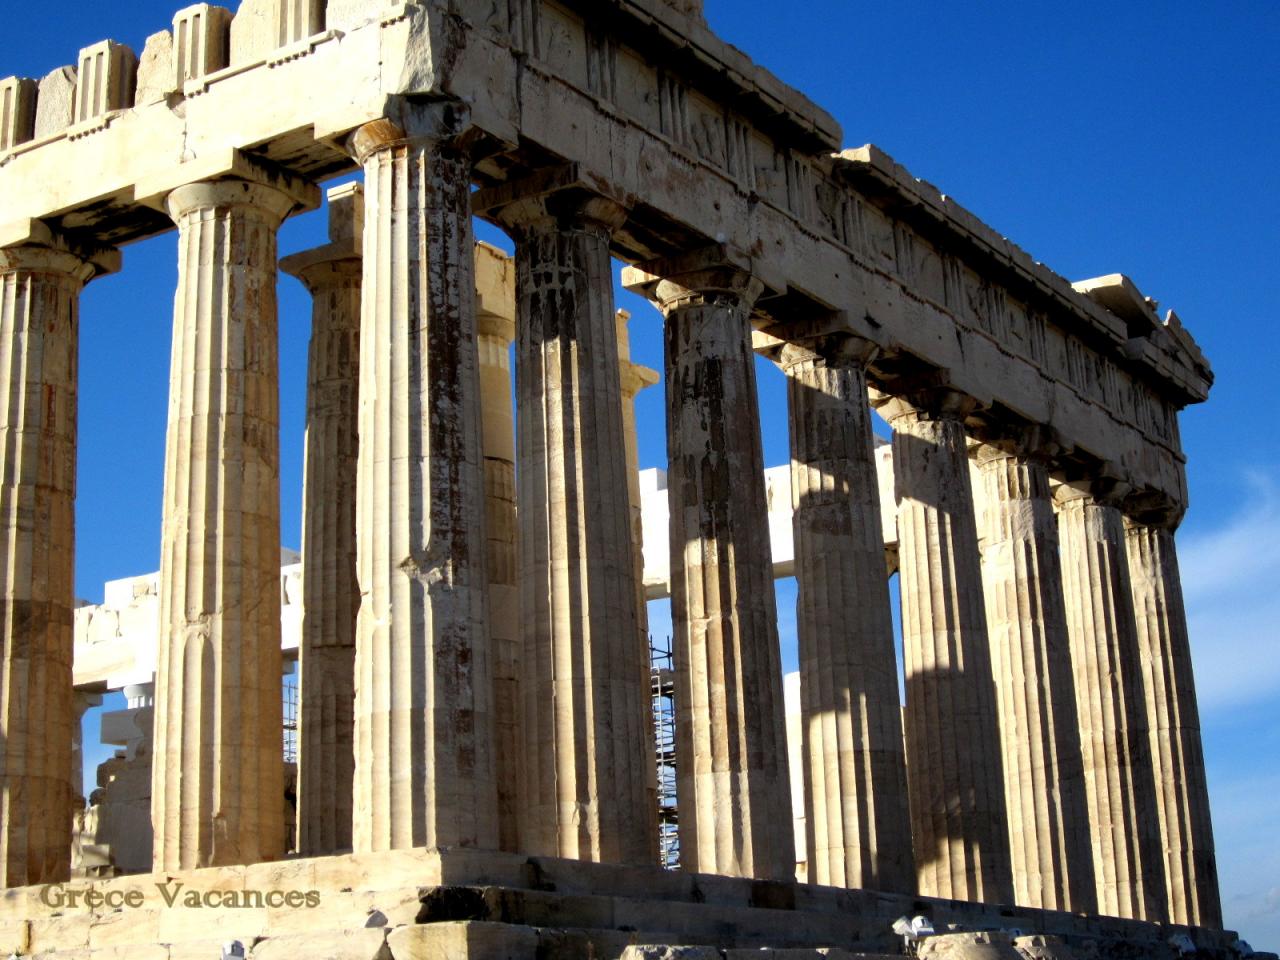 Acropole Parthenon -IMG_1002-GV